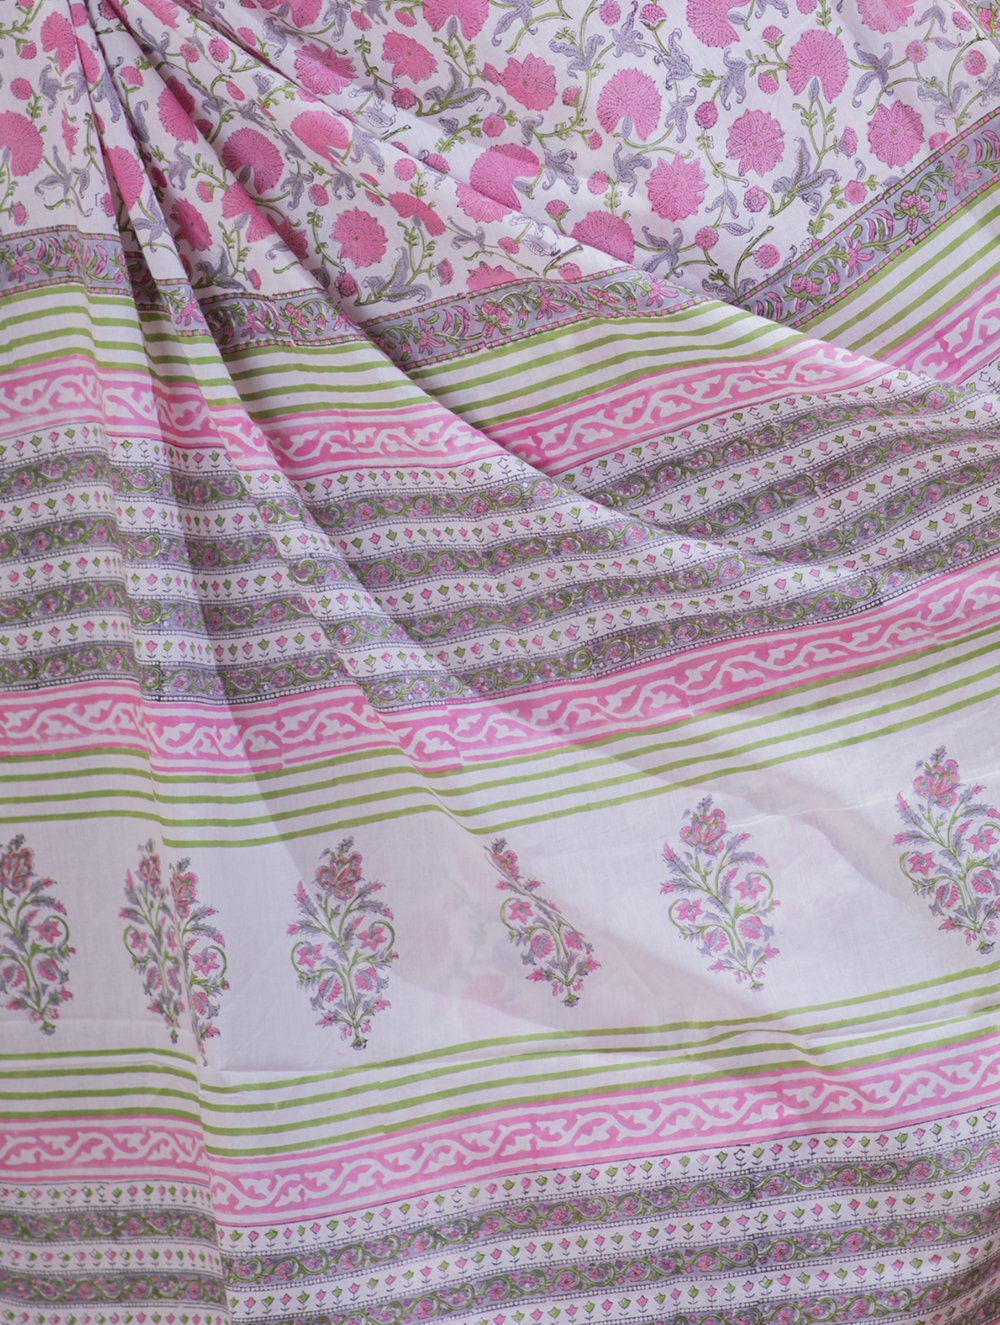 Load image into Gallery viewer, Bagru Sanganeri Block Printed Cotton Saree - Pink &amp; White